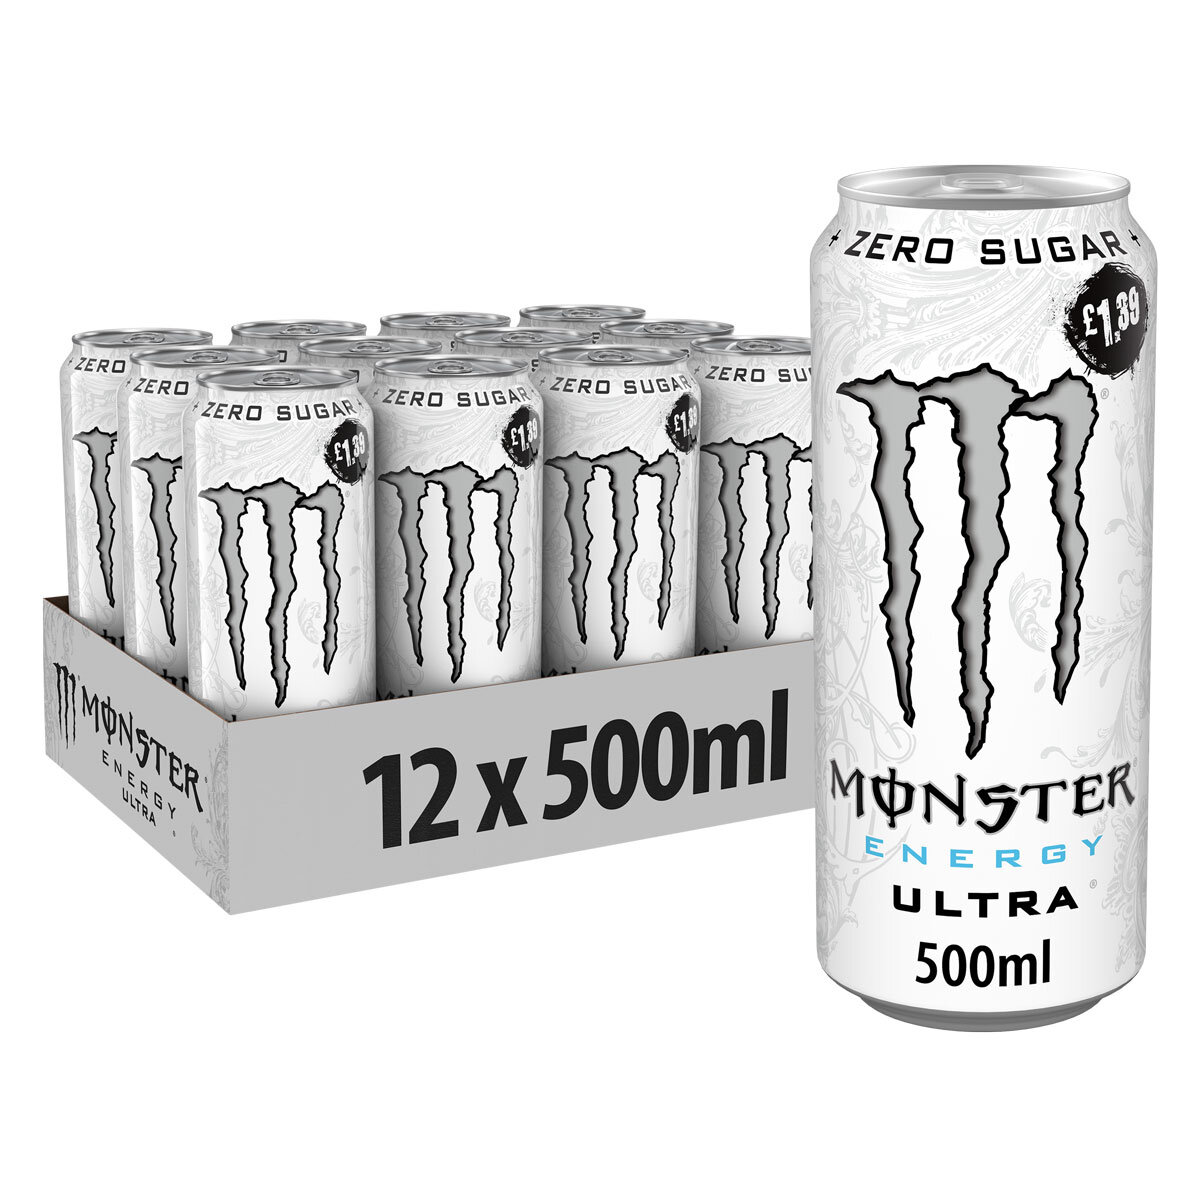 Monster Energy Sampler Pack, Super Energy Drink, 9 South Korea